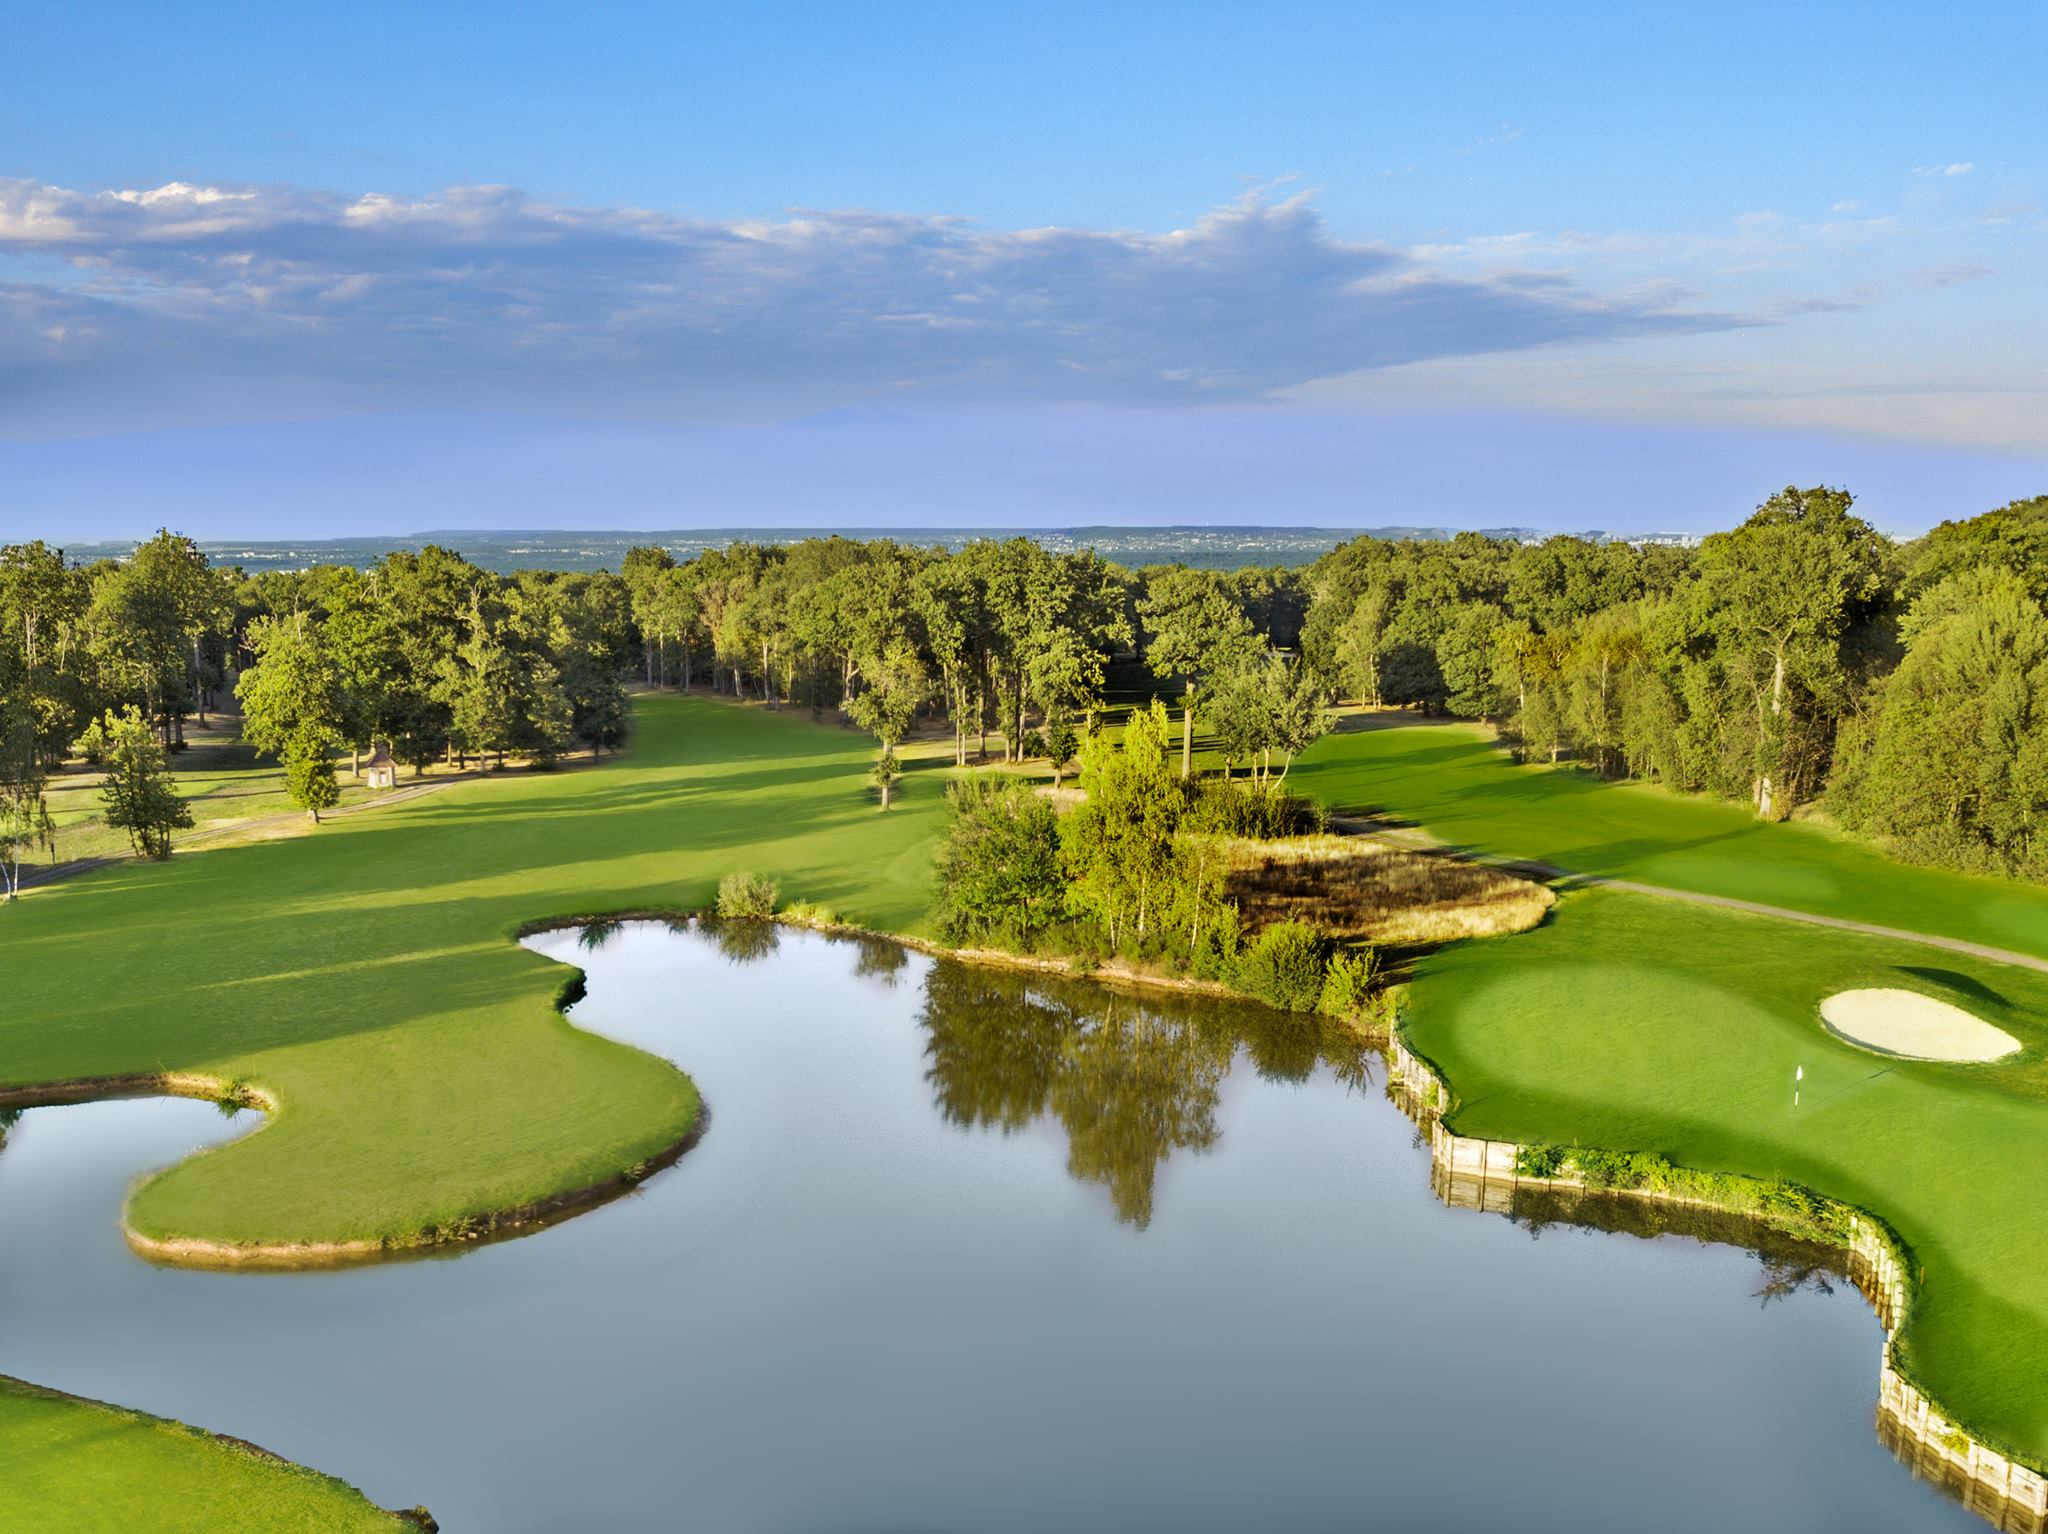 Carnet d'Affaires Golf Business & Culture FRANCE - ÎLE MAURICE